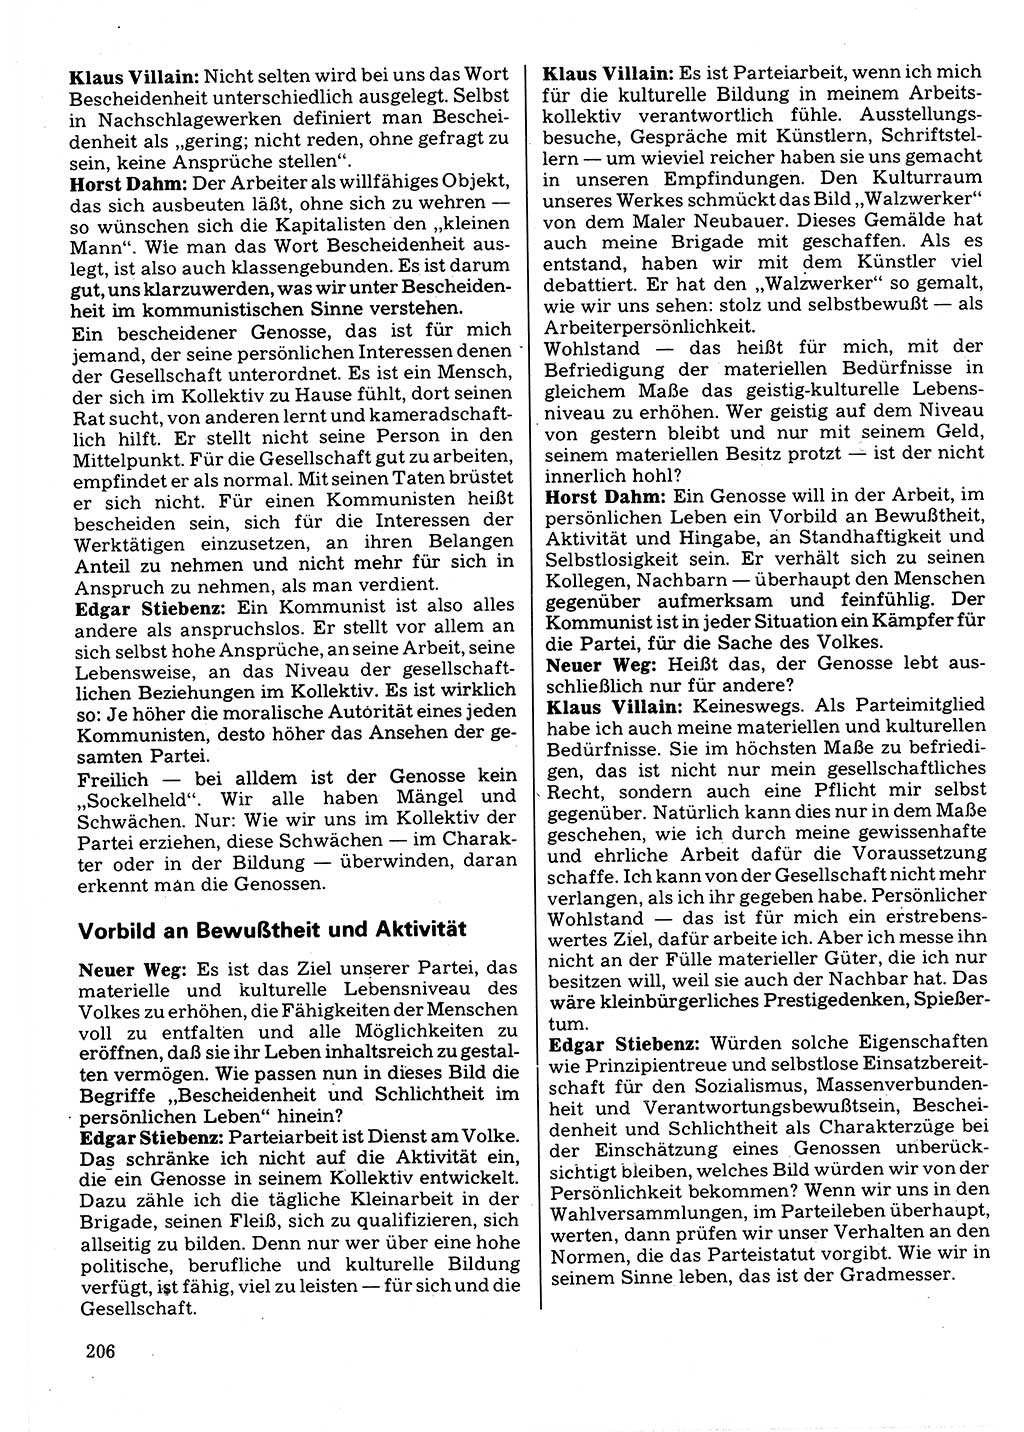 Neuer Weg (NW), Organ des Zentralkomitees (ZK) der SED (Sozialistische Einheitspartei Deutschlands) für Fragen des Parteilebens, 32. Jahrgang [Deutsche Demokratische Republik (DDR)] 1977, Seite 206 (NW ZK SED DDR 1977, S. 206)